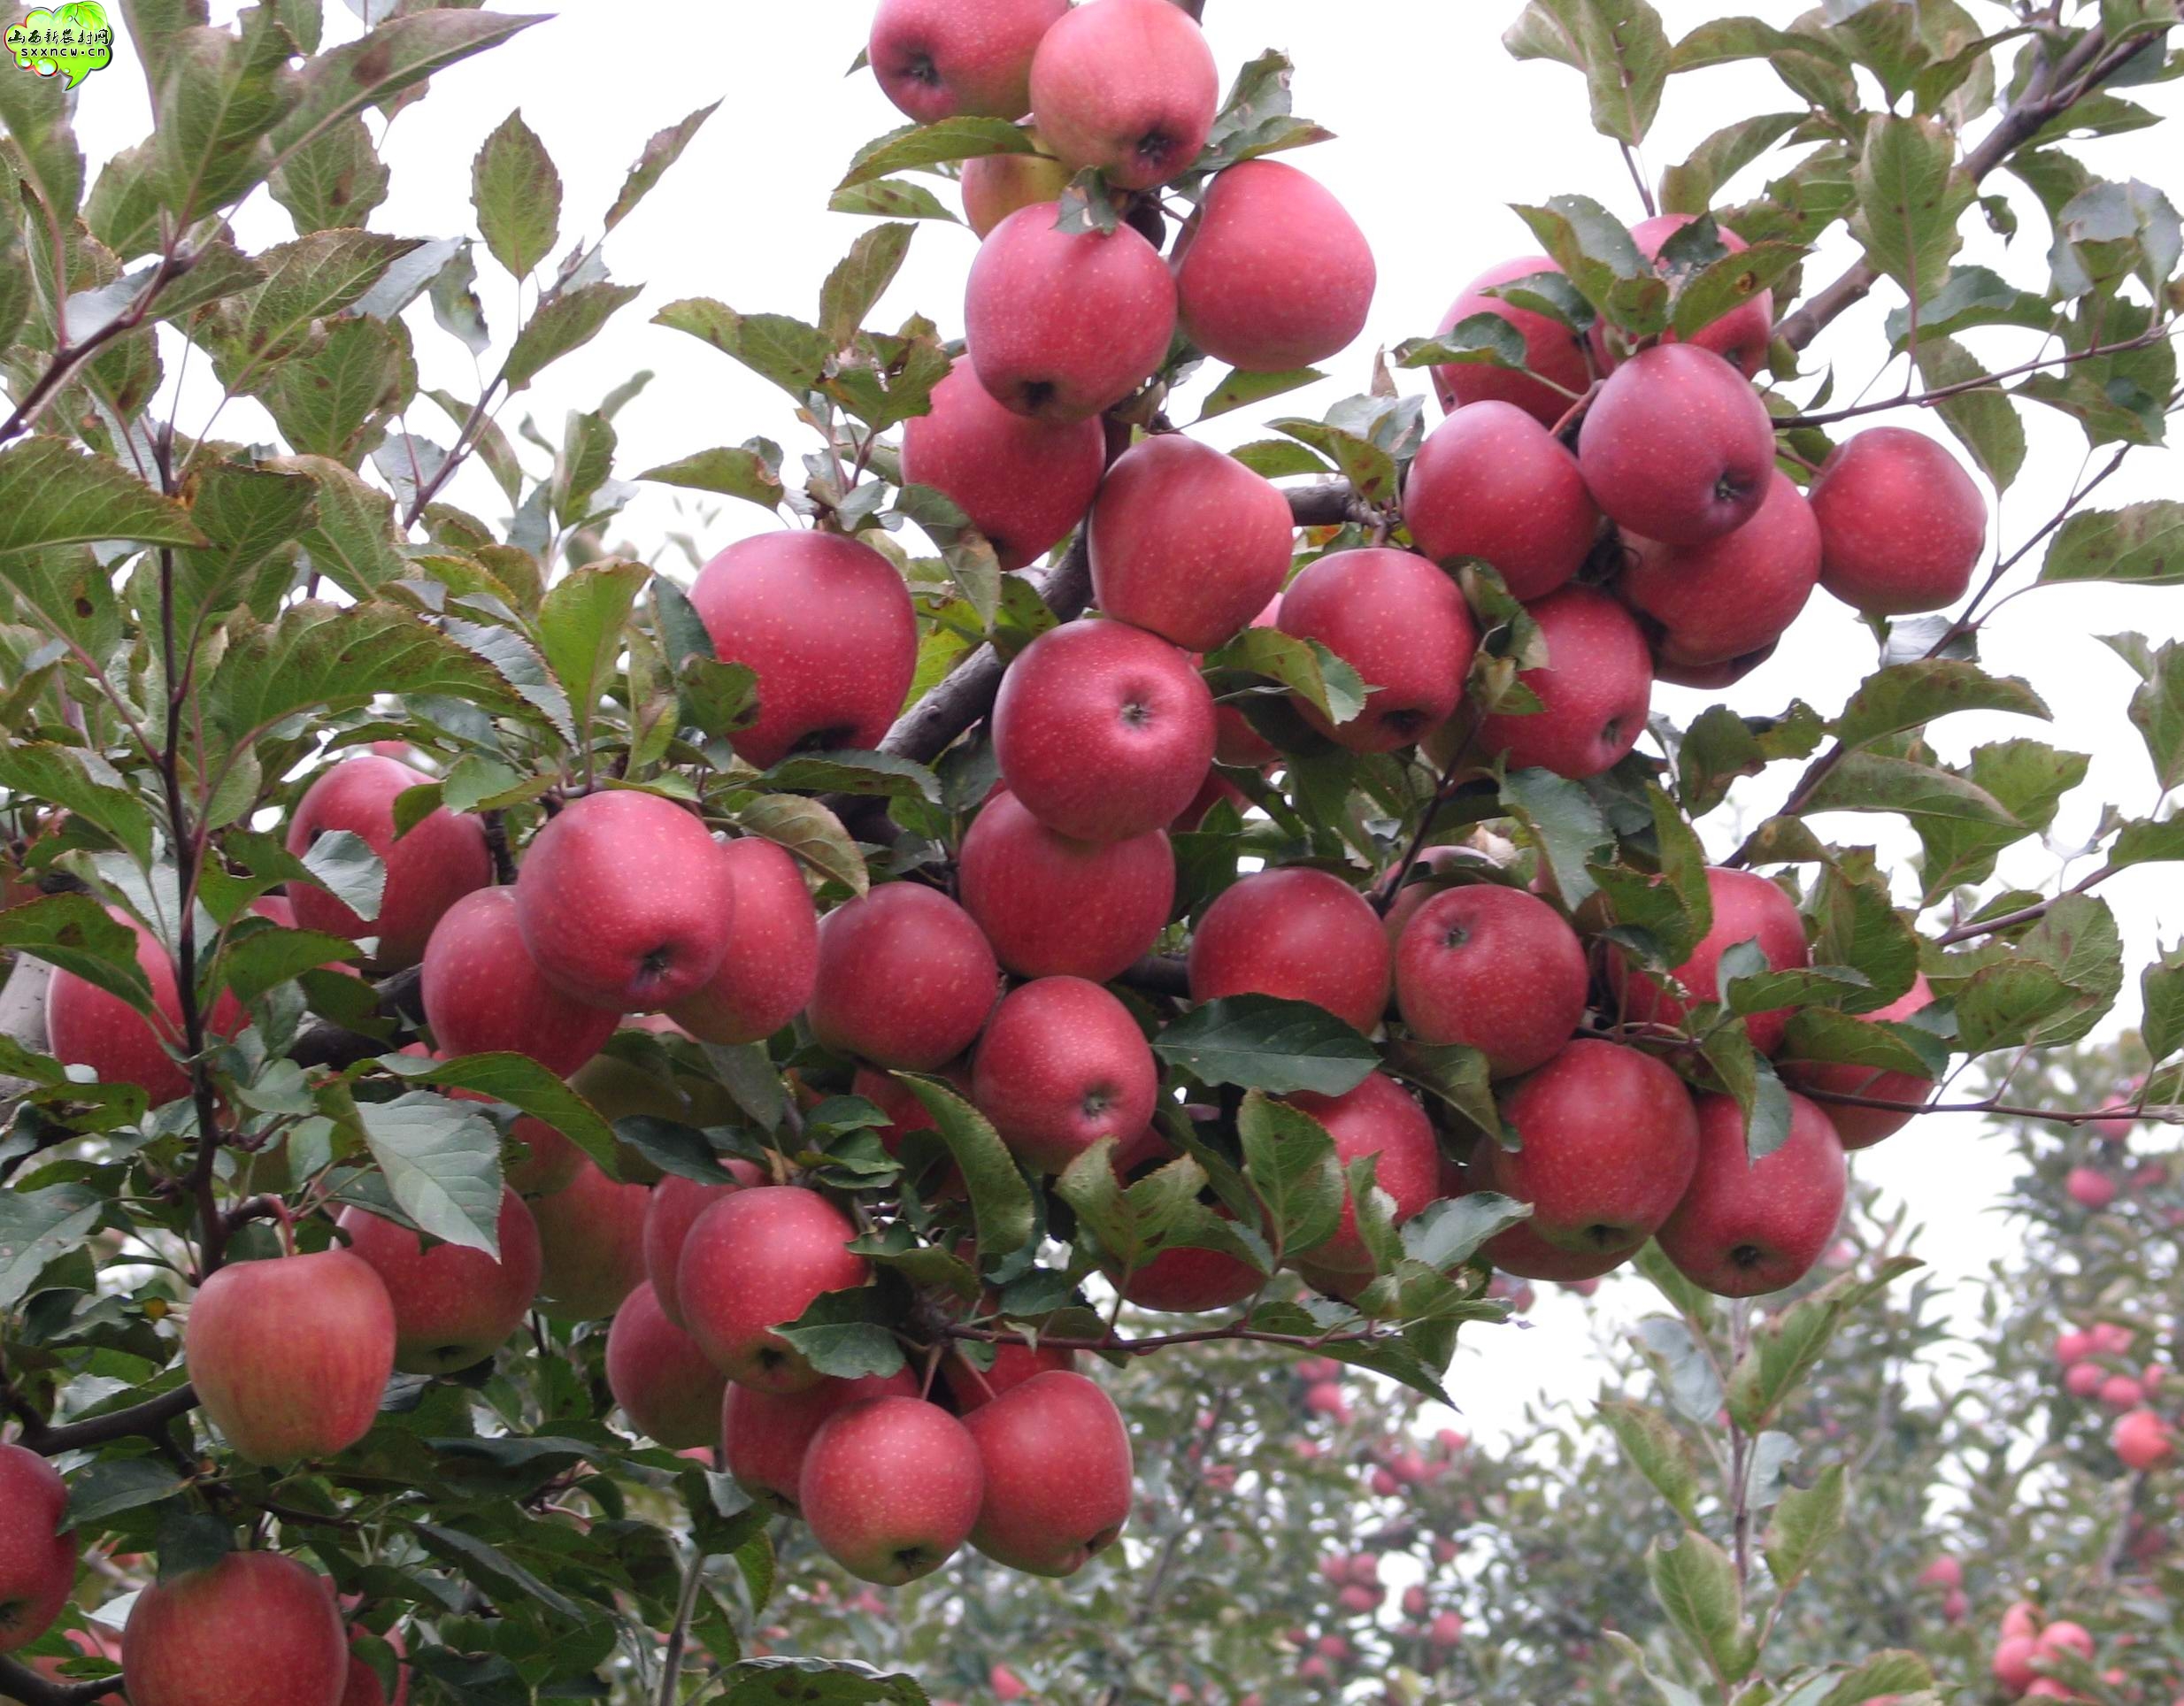 供应；供应矮化花牛苹果树苗，红色之爱苹果树苗，苹果树苗价格。保证纯度。价格便宜图片